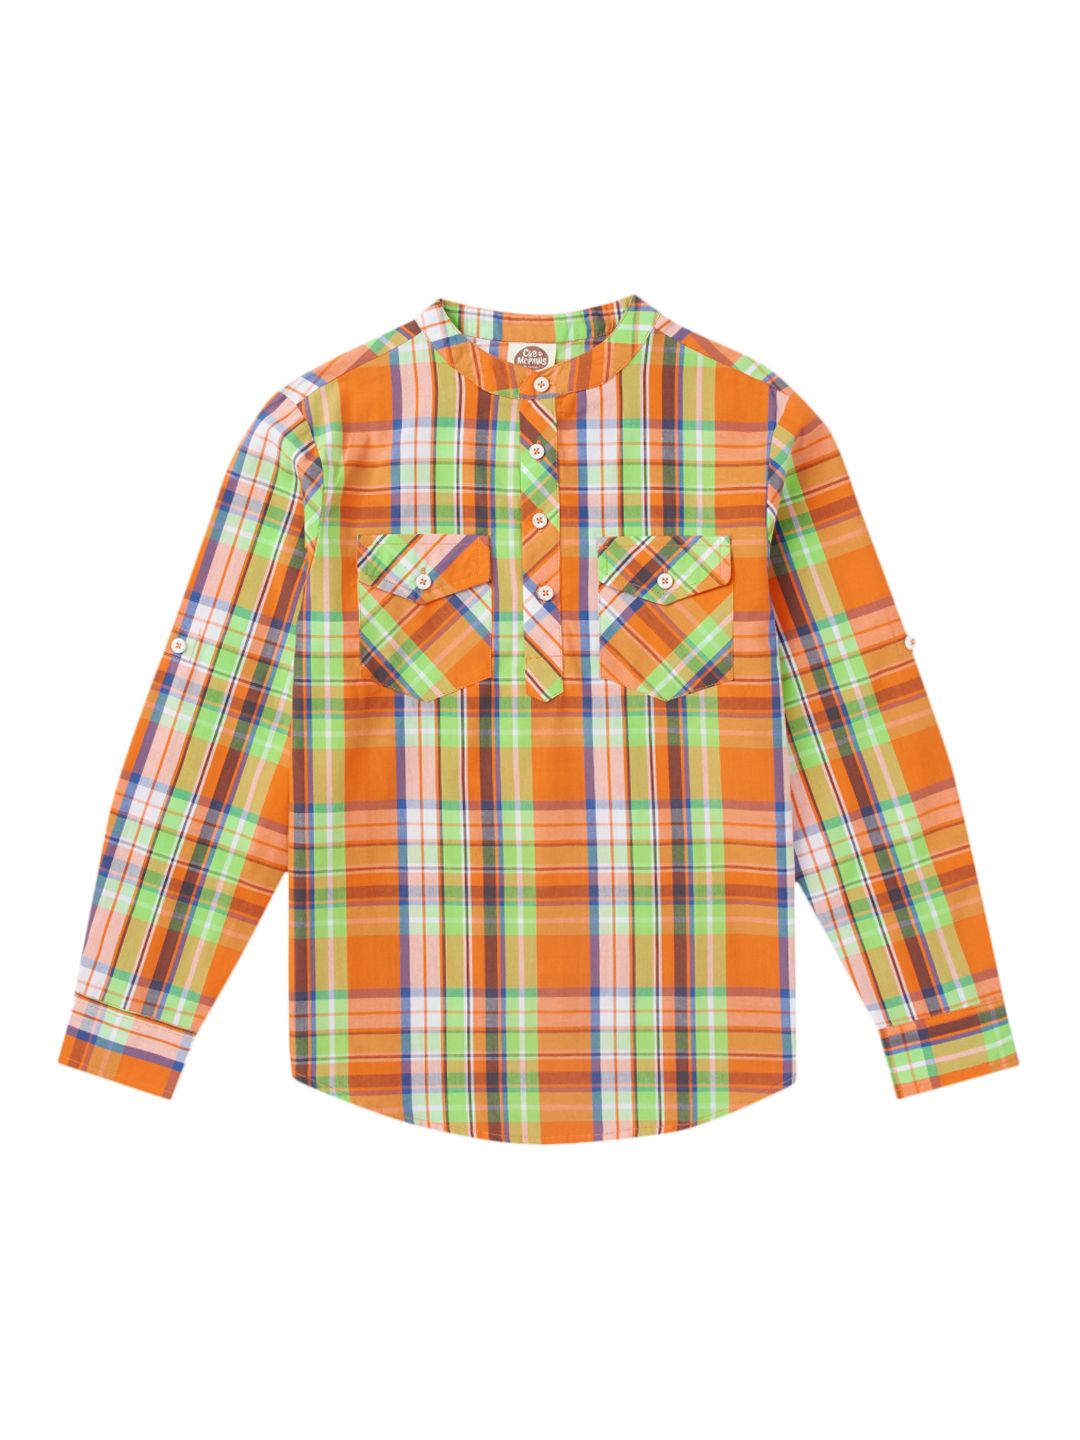 Boys Mandarin Collar Full Sleeves Shirt, Multicolor